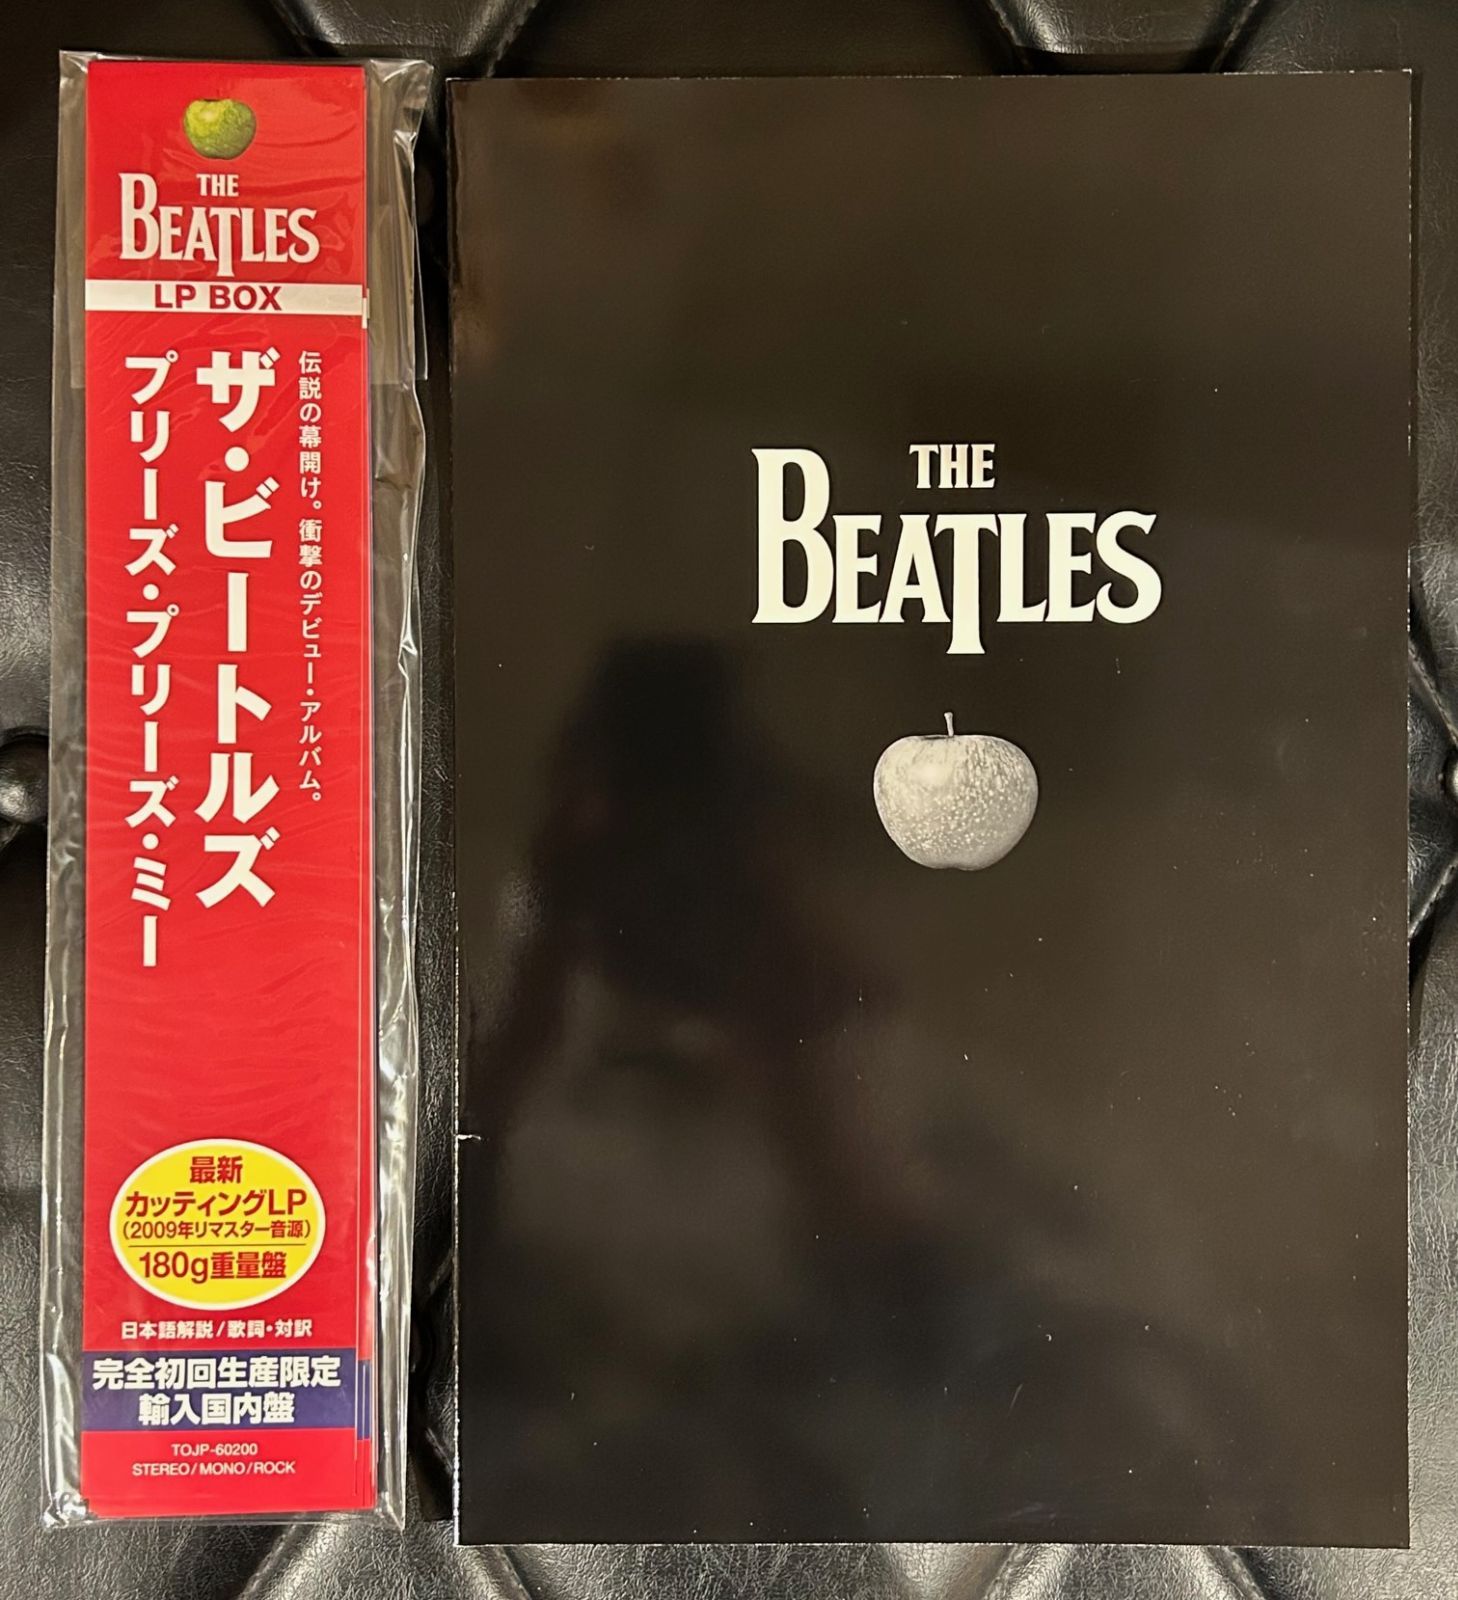 ザ•ビートルズ LP BOX 輸入国内盤 A60417-16 購買 - 洋楽